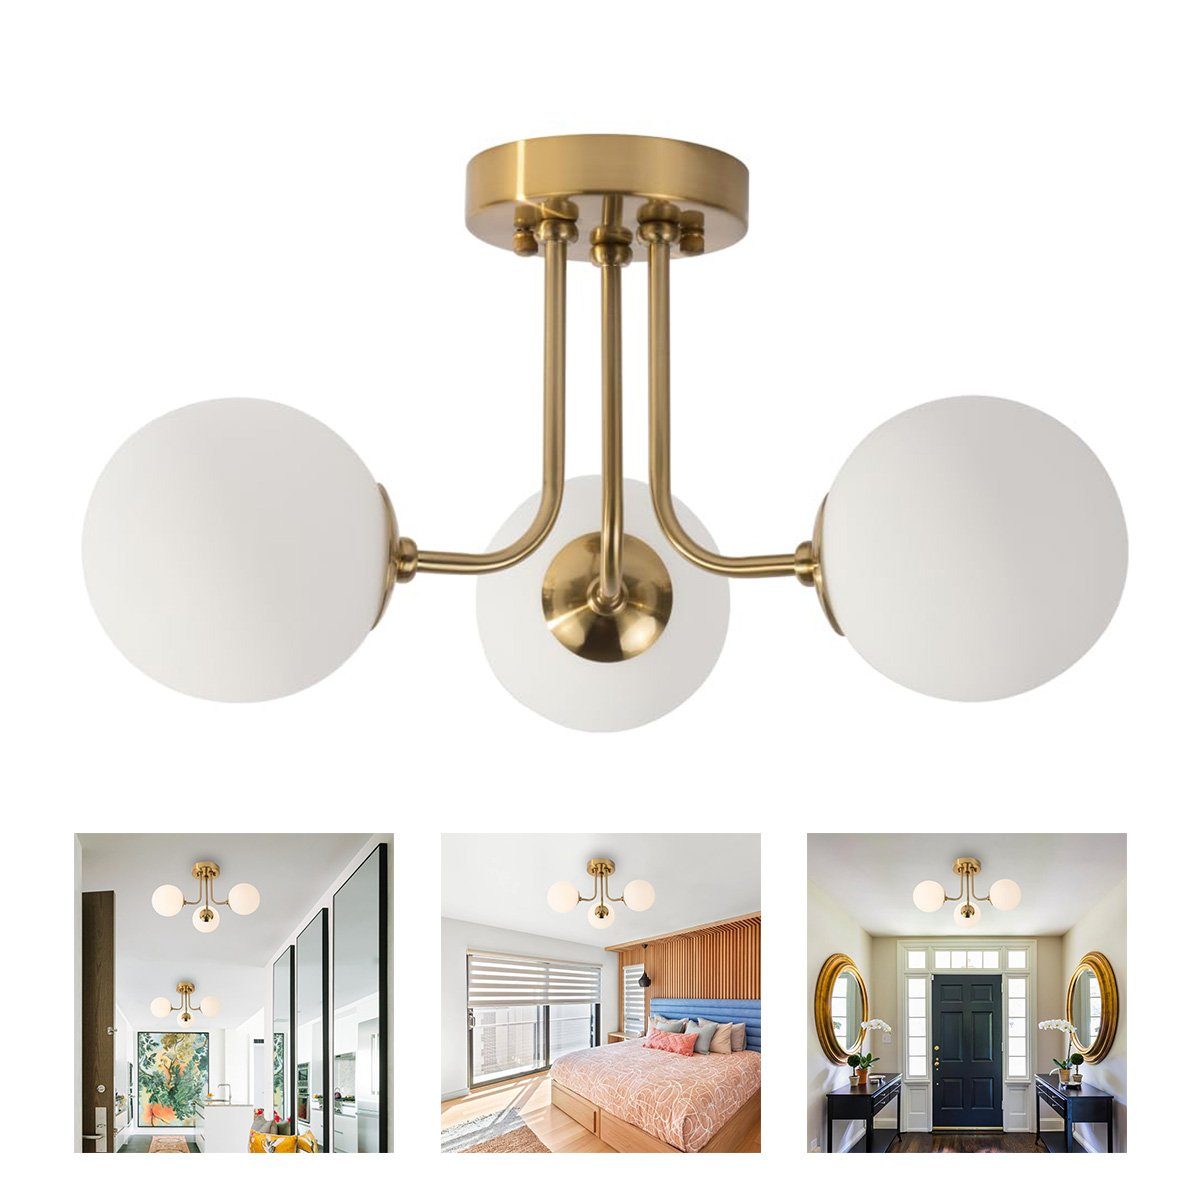 Welikera Deckenleuchte 3-Kopf-Deckenlampe Kugelförmig für 10-15 m² Raum,E27-Lampenfassung Gold